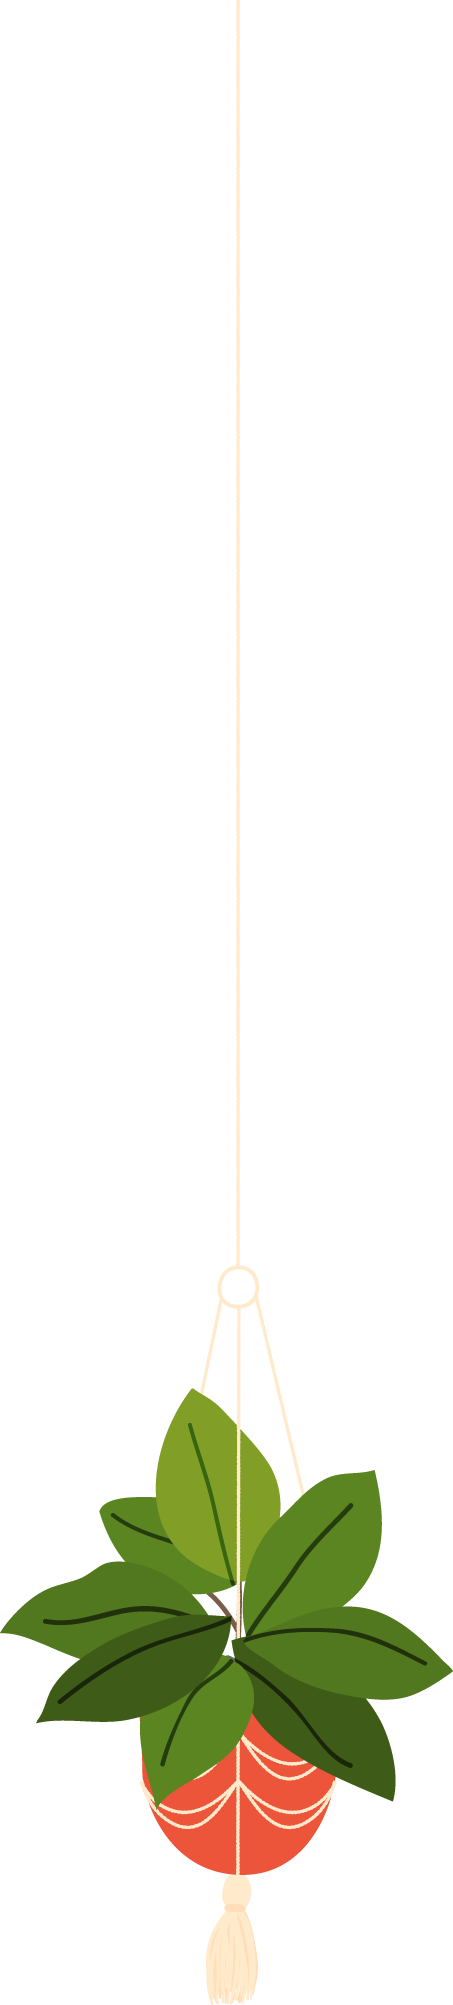 סחלב פלנופסיס מיני - ענף 1